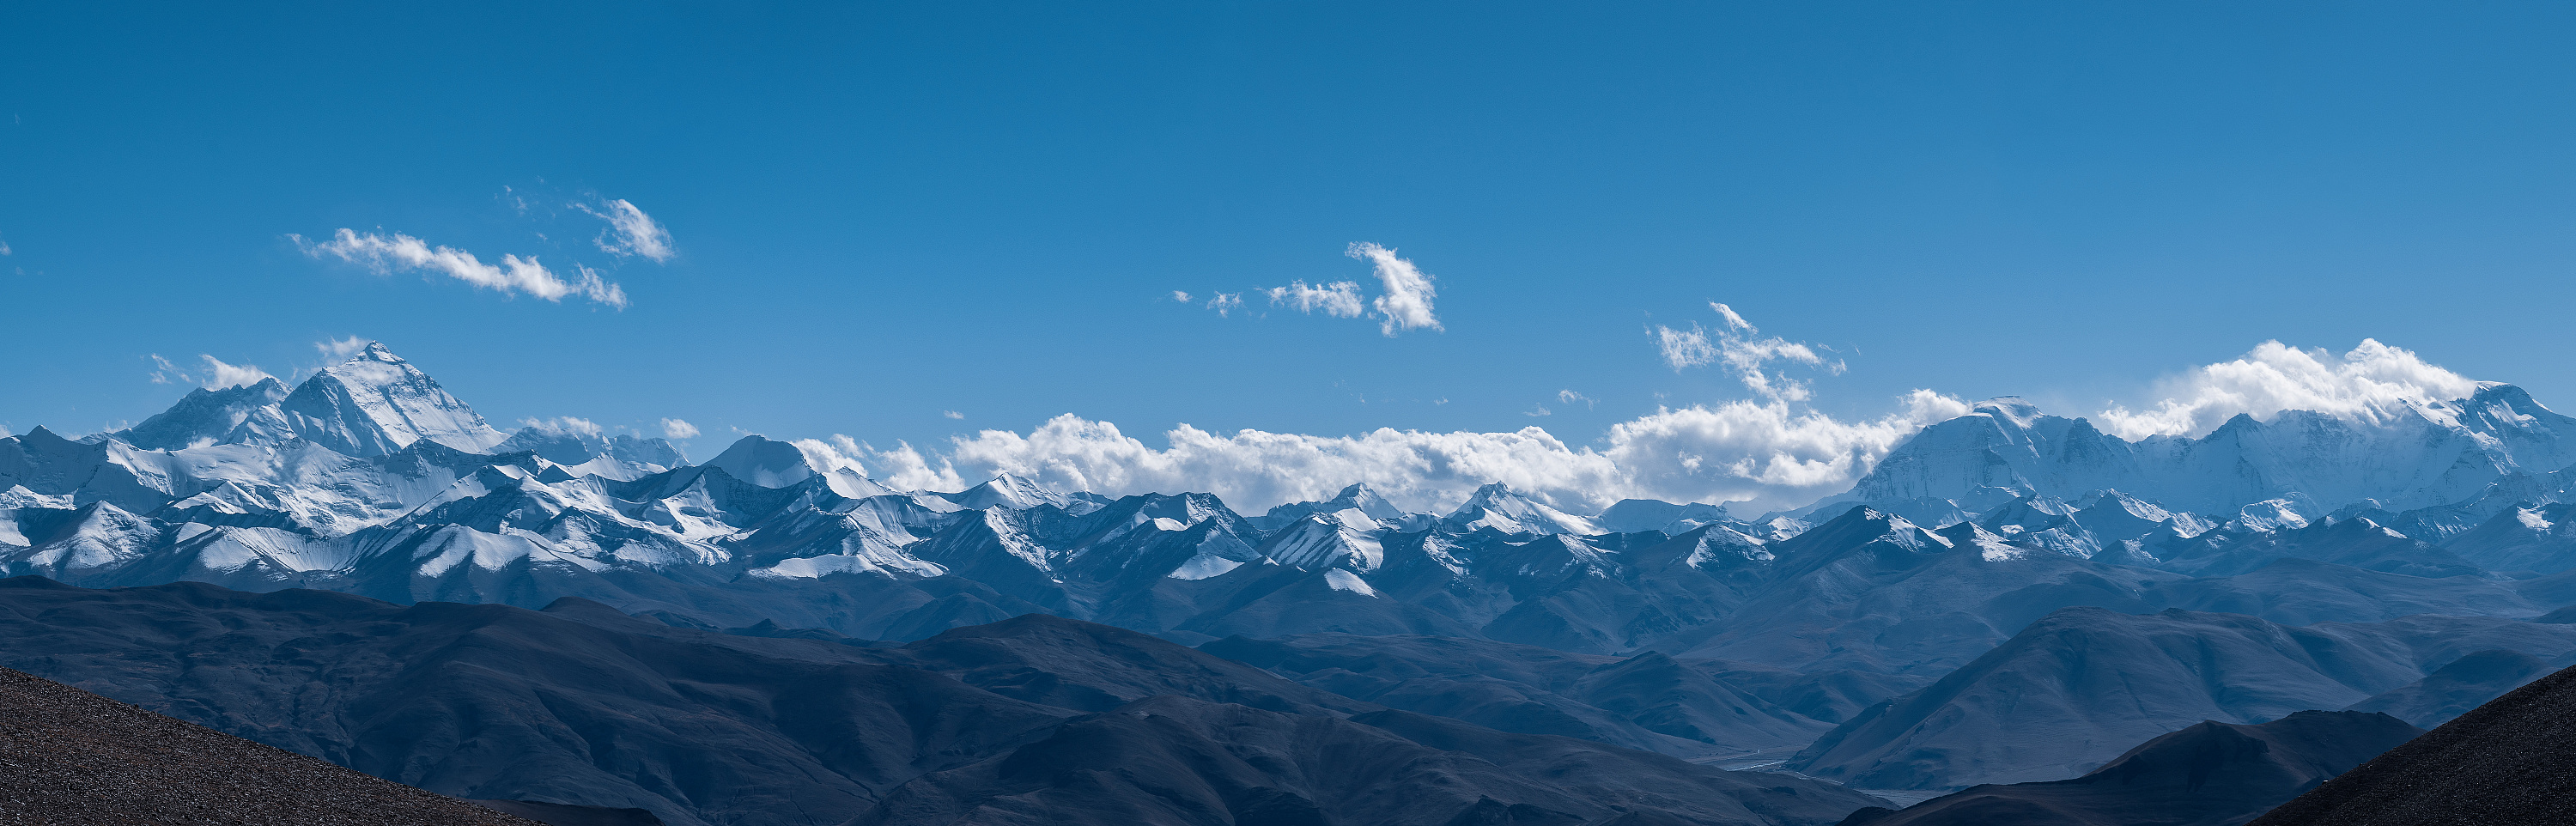 圆梦 喜马拉雅山脉-日喀则旅游攻略-游记-去哪儿攻略